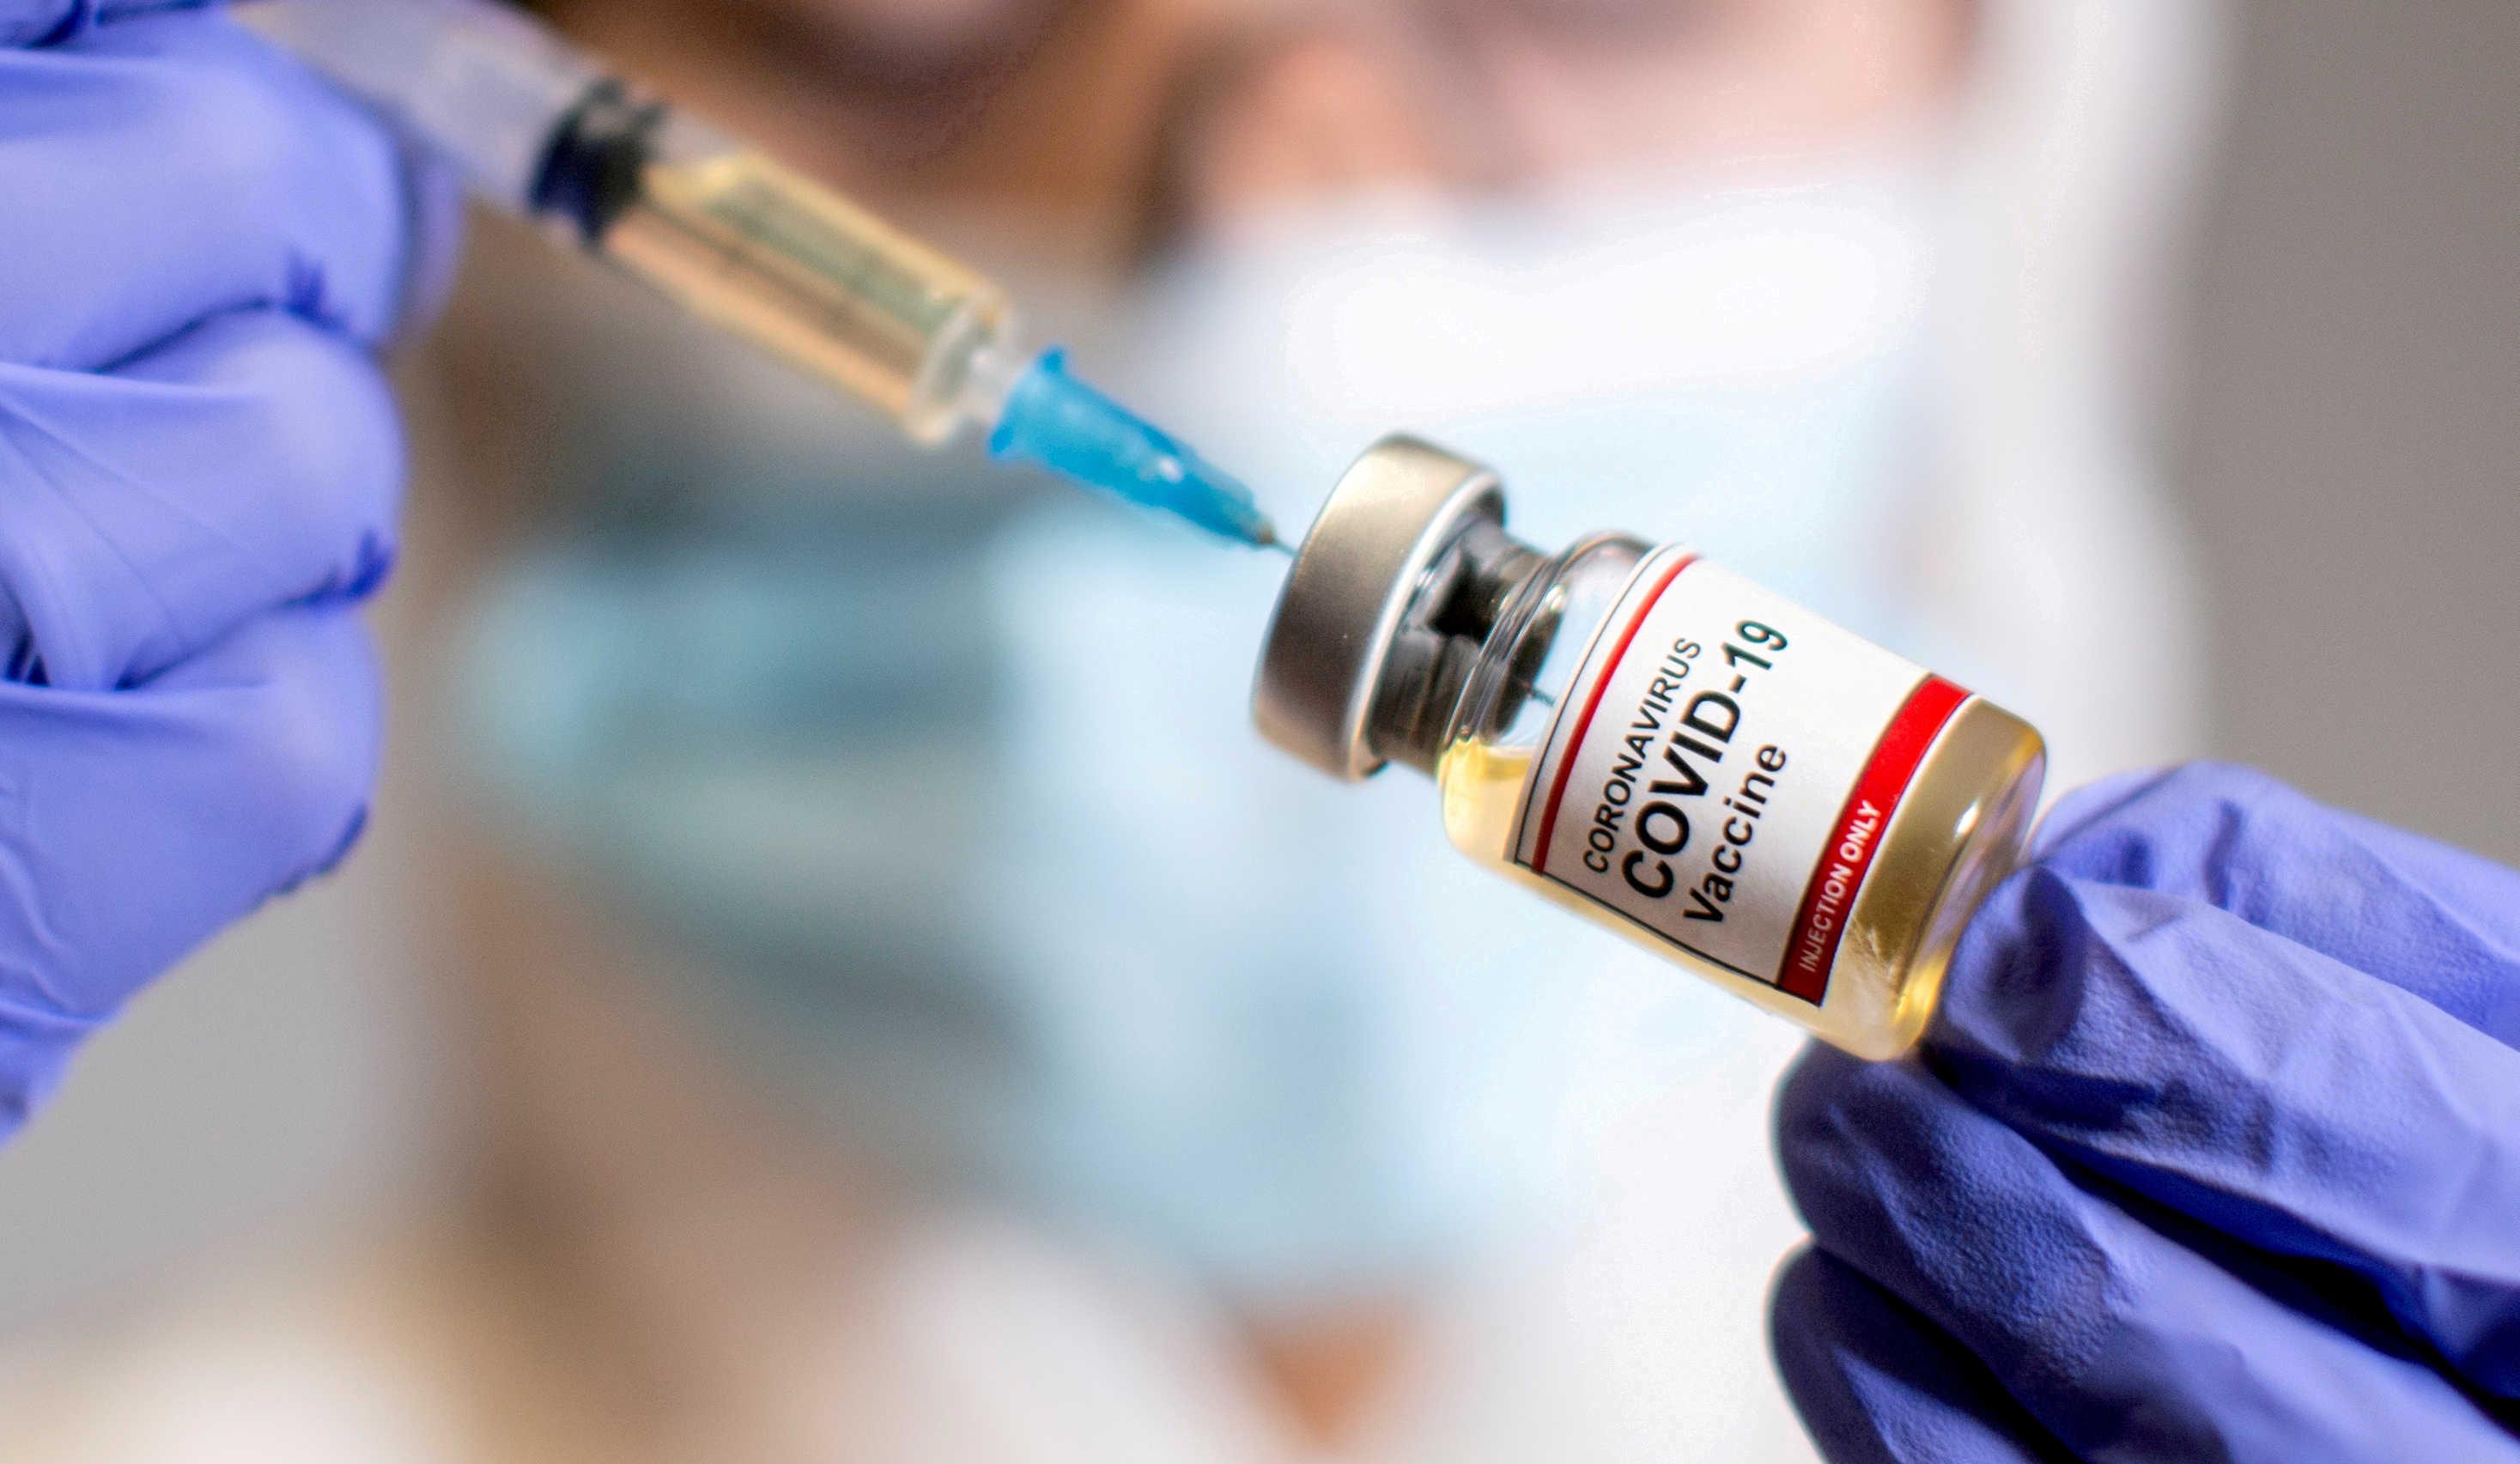 هندوراس تشرع في إعطاء جرعة معززة من اللقاح المضاد لكوفيد-19

